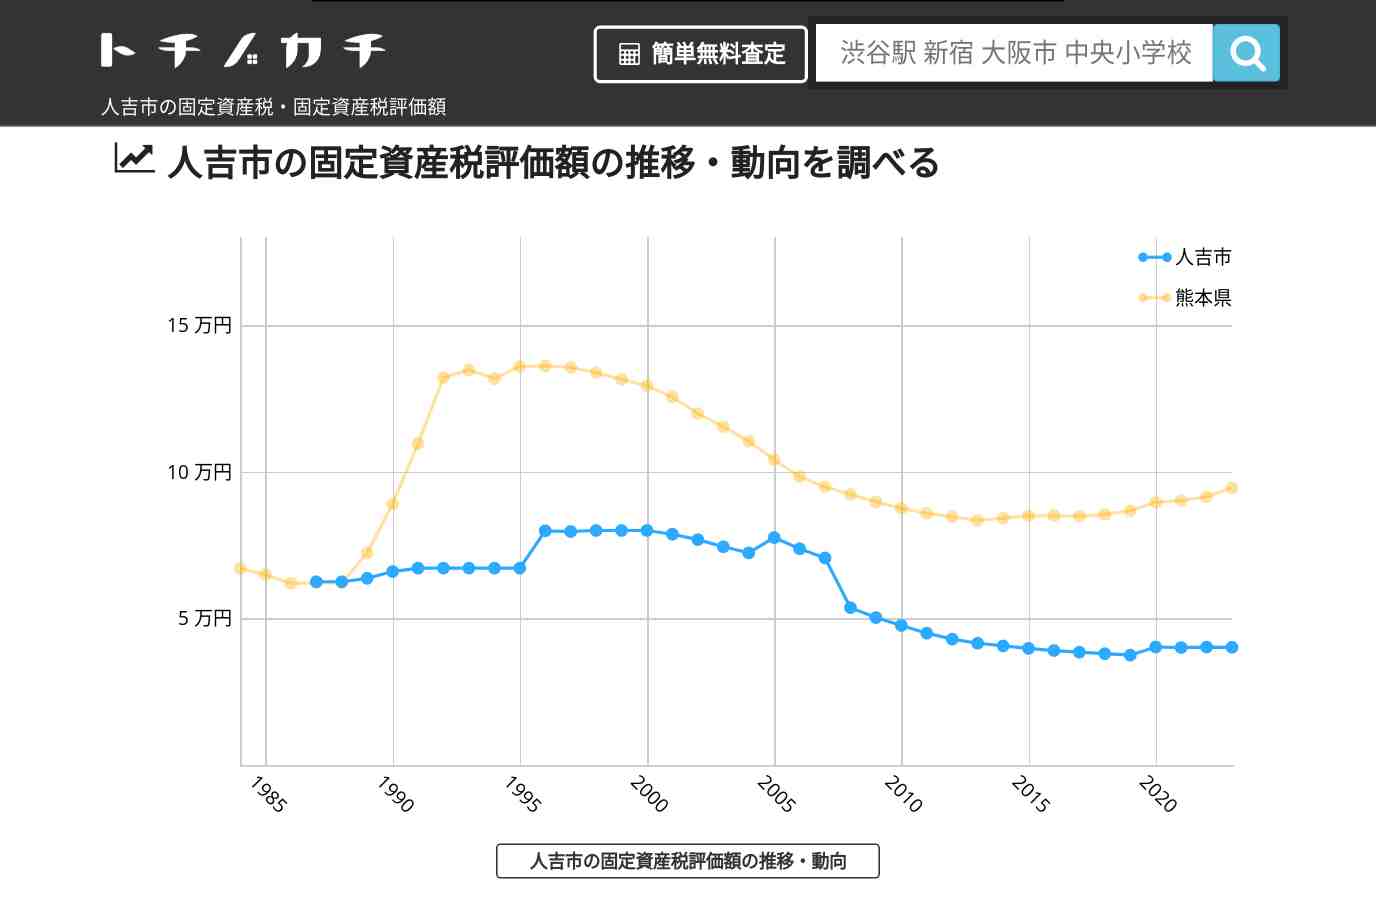 人吉西小学校(熊本県 人吉市)周辺の固定資産税・固定資産税評価額 | トチノカチ